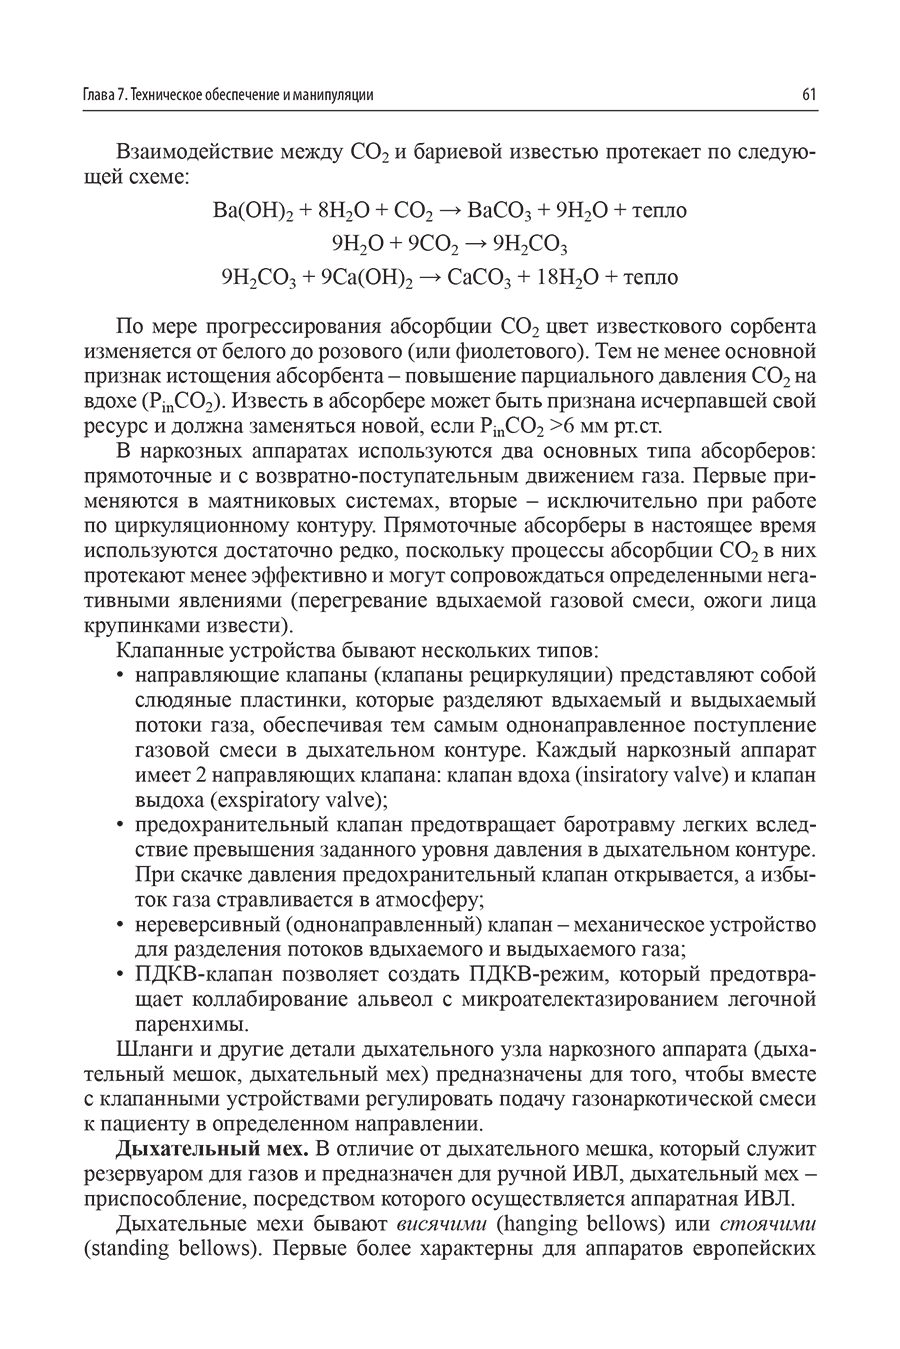 Пример страницы из книги  "Анестезия в детской практике: учебное пособие" - Лазарев В. В.